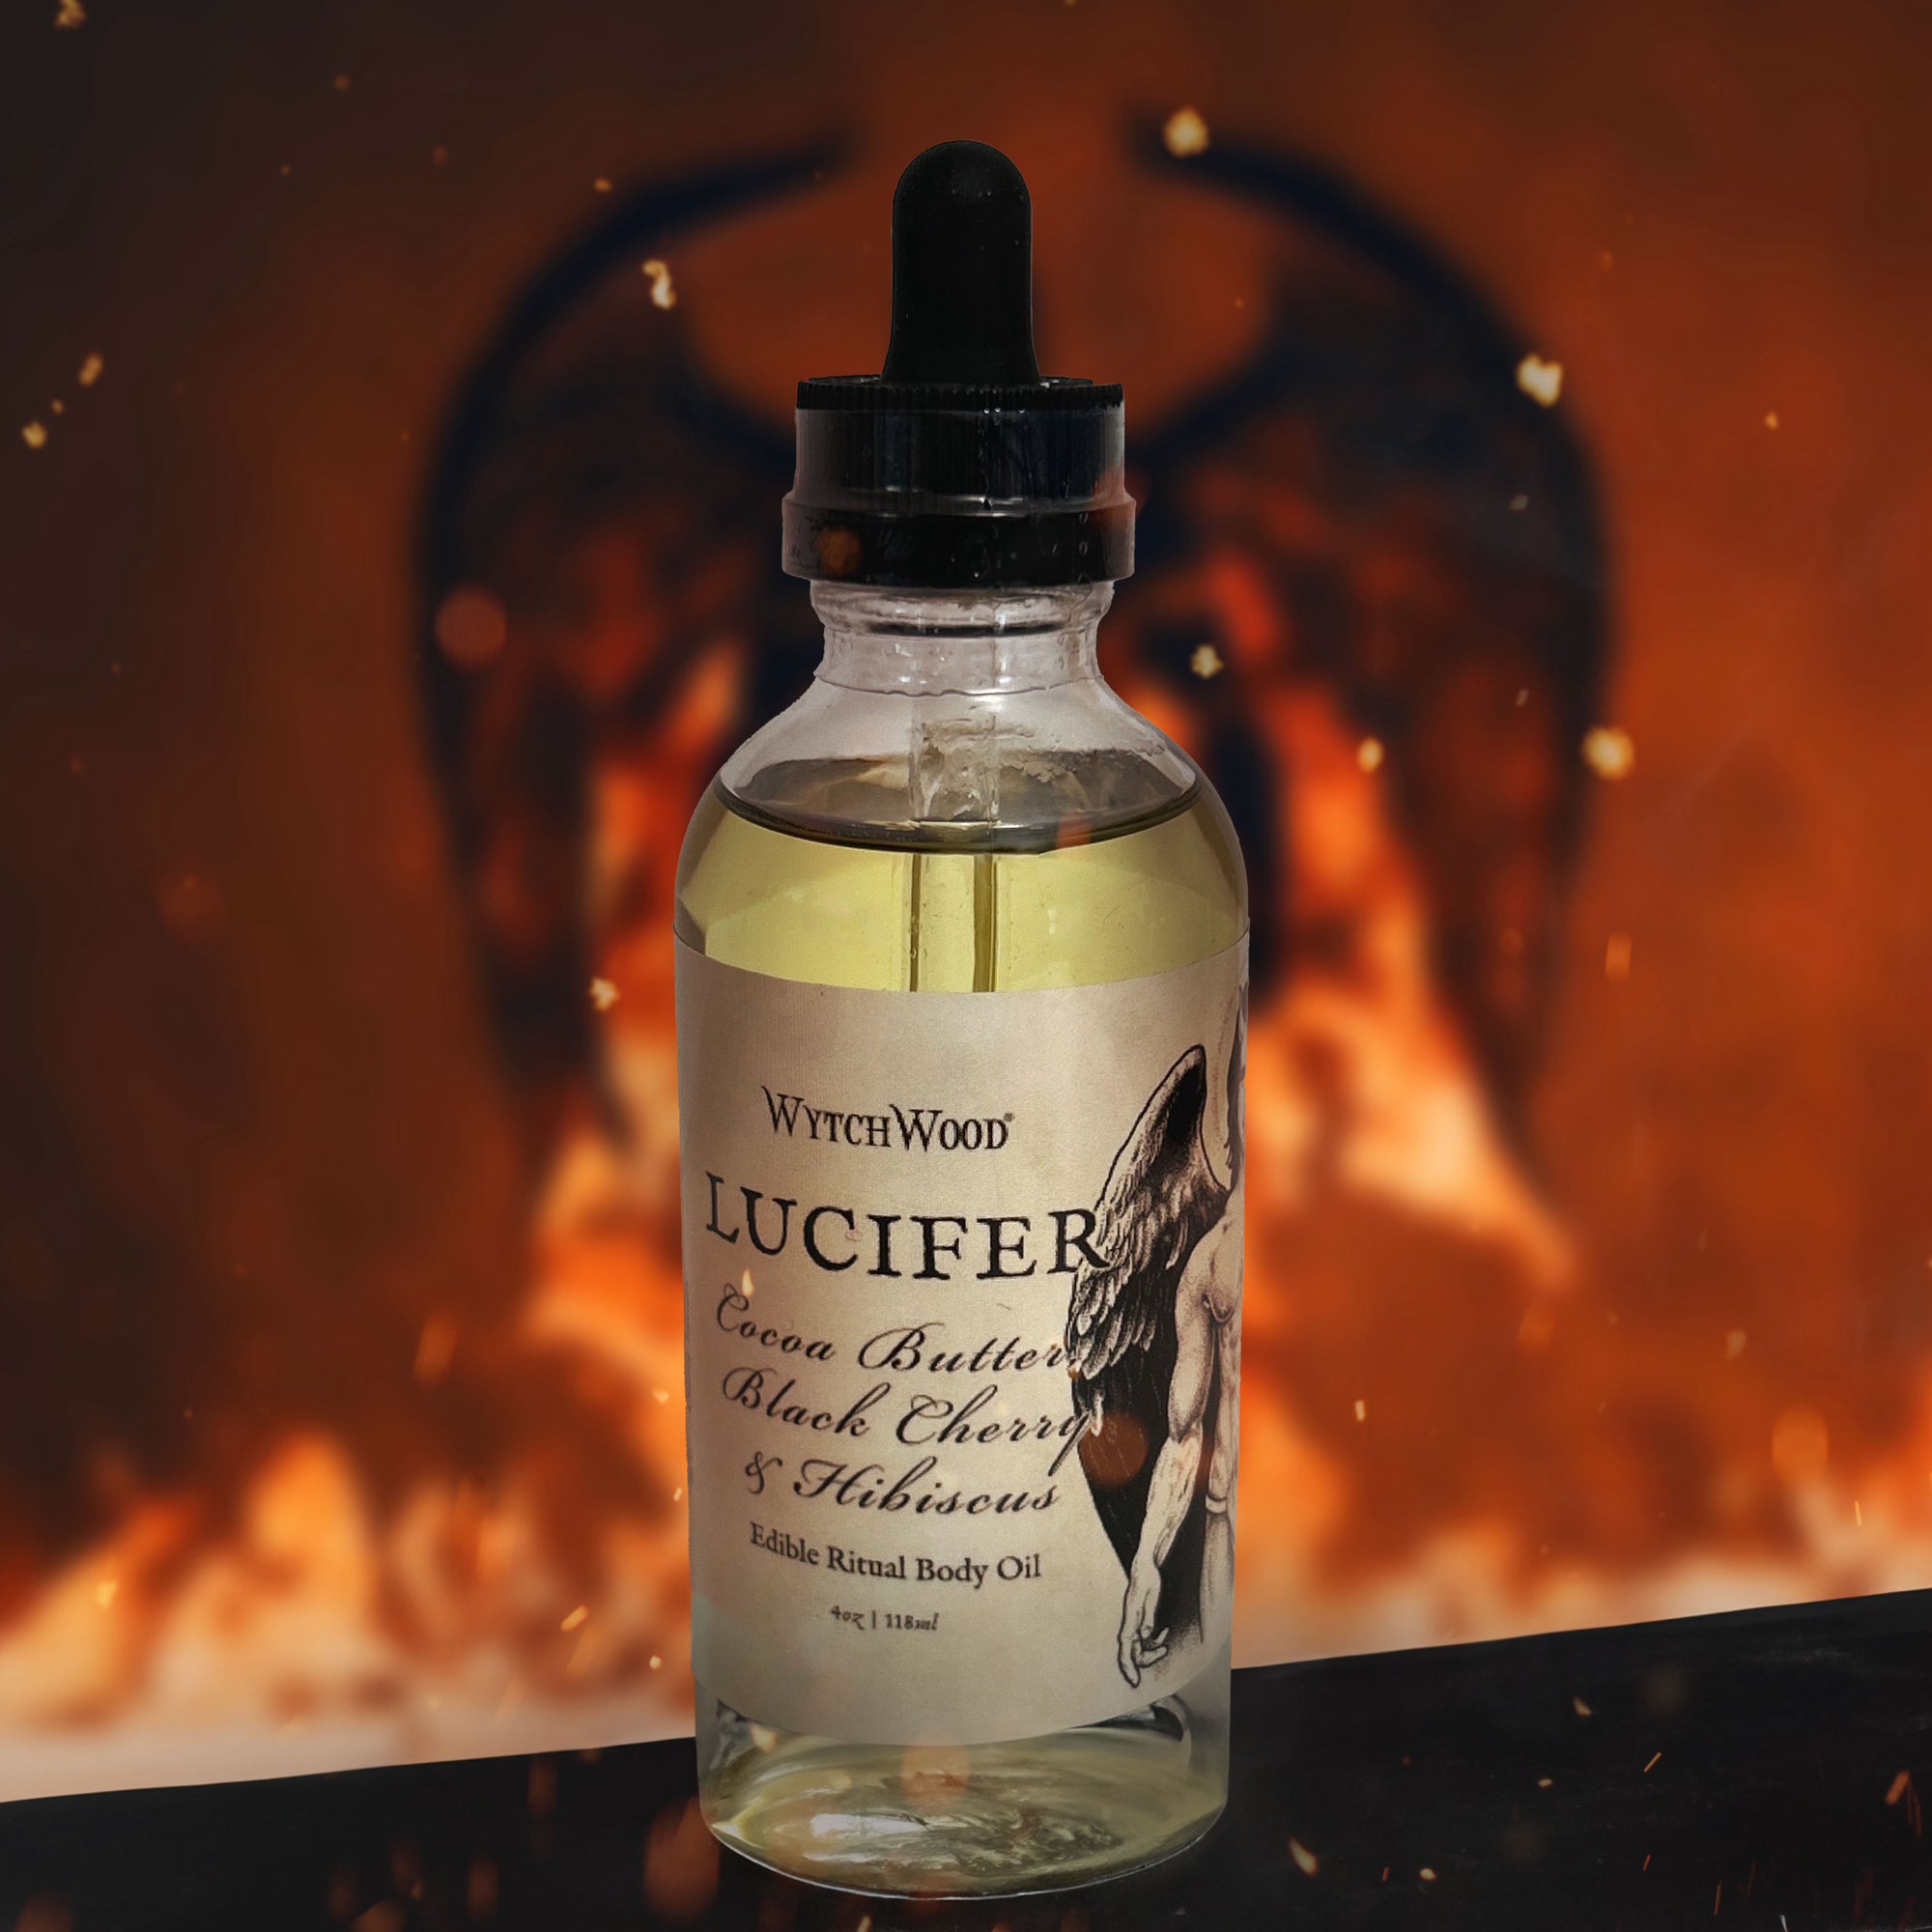 WytchWood's Lucifer Edible Ritual Body Oil